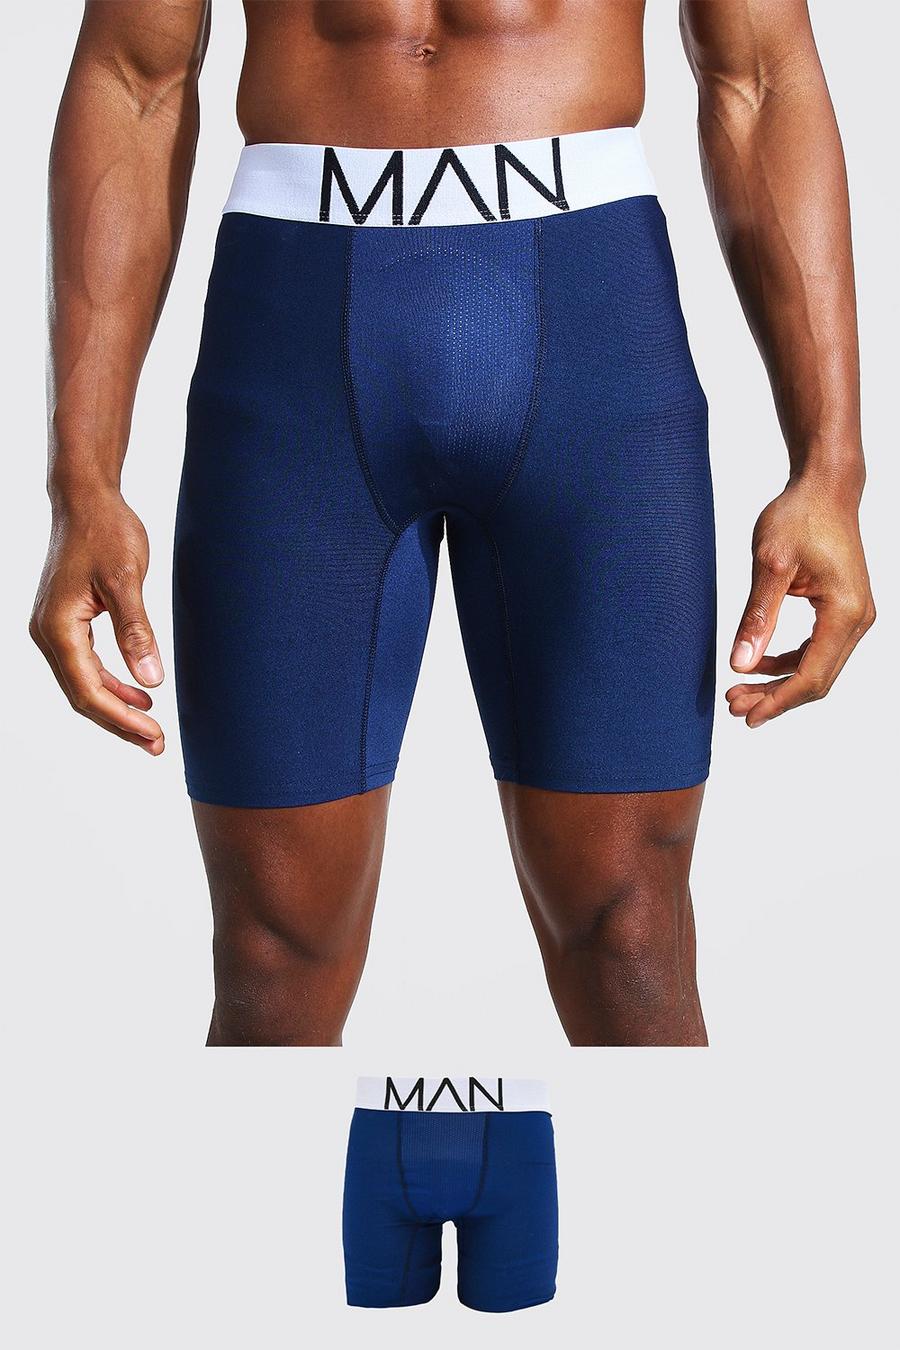 נייבי azul marino תחתון בוקסר ספורטיבי ארוך עם כיתוב MAN וקו חוצה image number 1